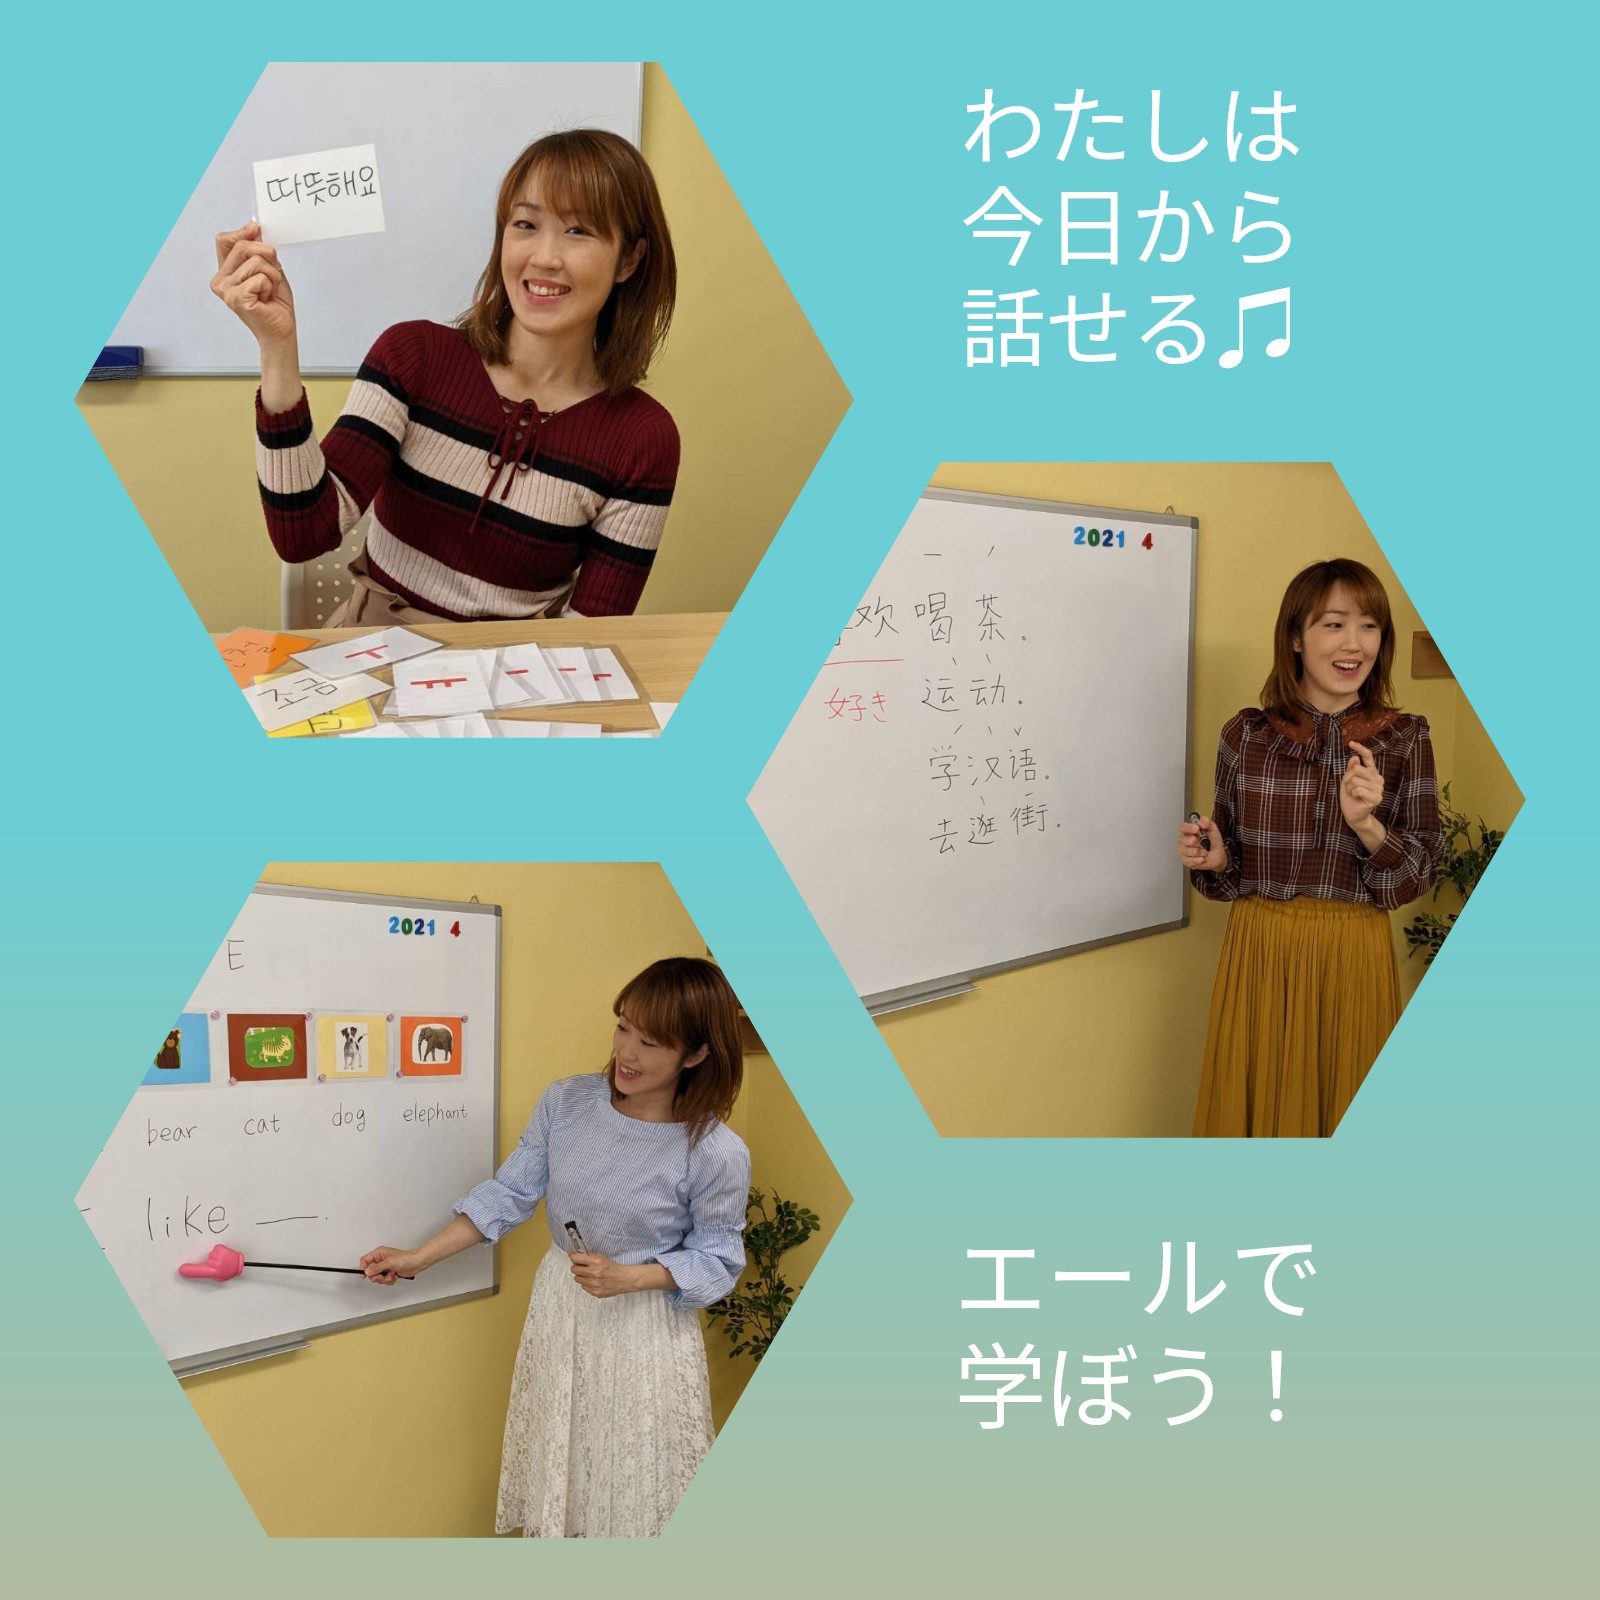 エール外国語教室 神戸の 穴場的 外国語教室 韓国語 中国語 こども英語